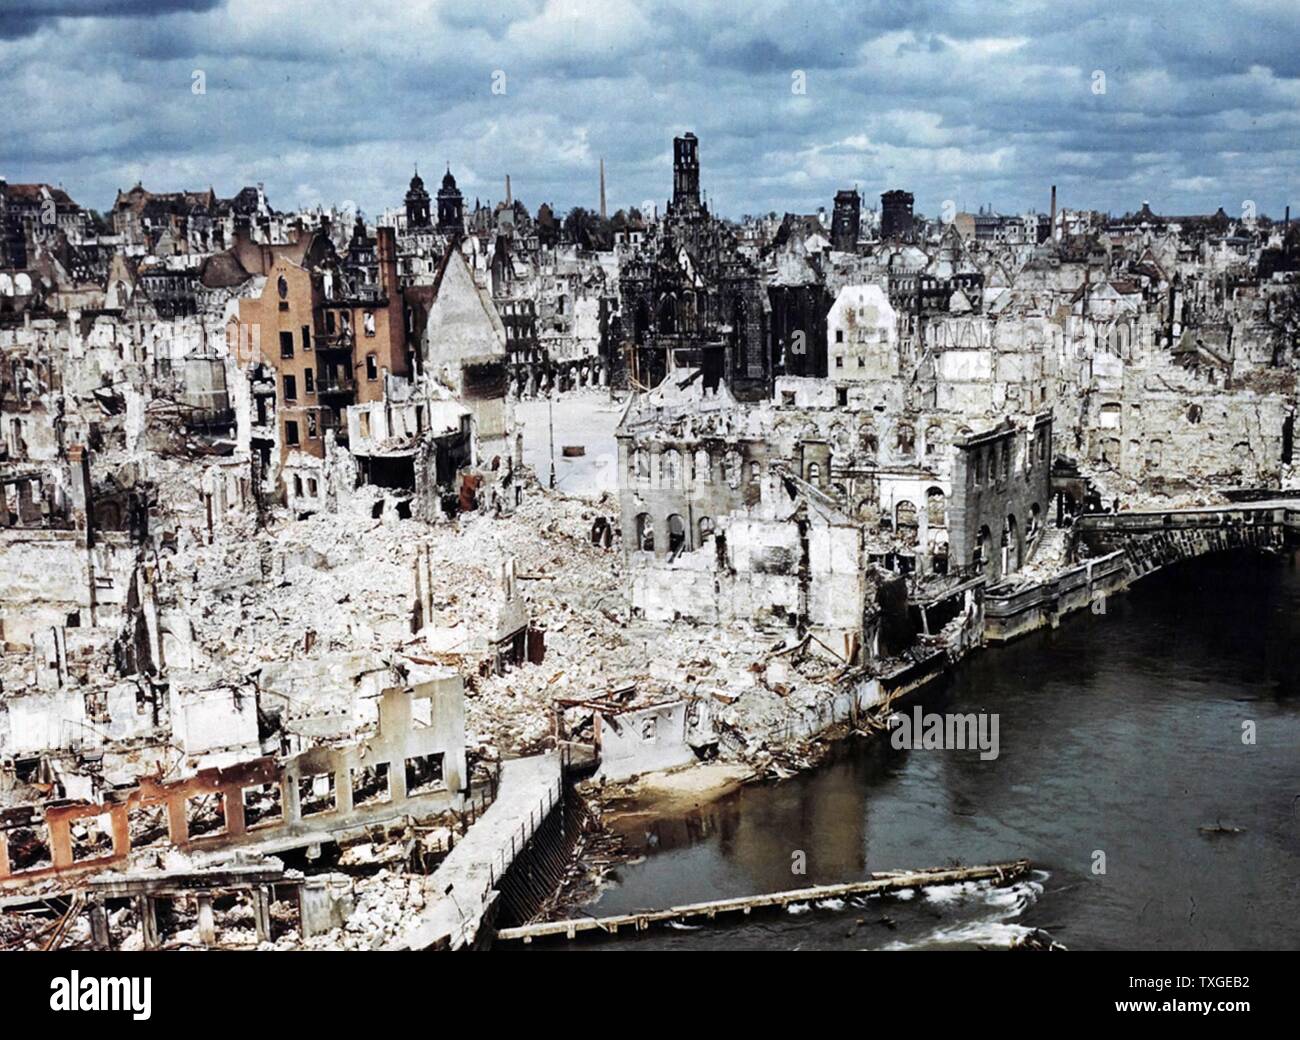 Photographie couleur de Nuremberg, en Allemagne, à la fin de la Seconde Guerre mondiale. Datée 1945 Banque D'Images